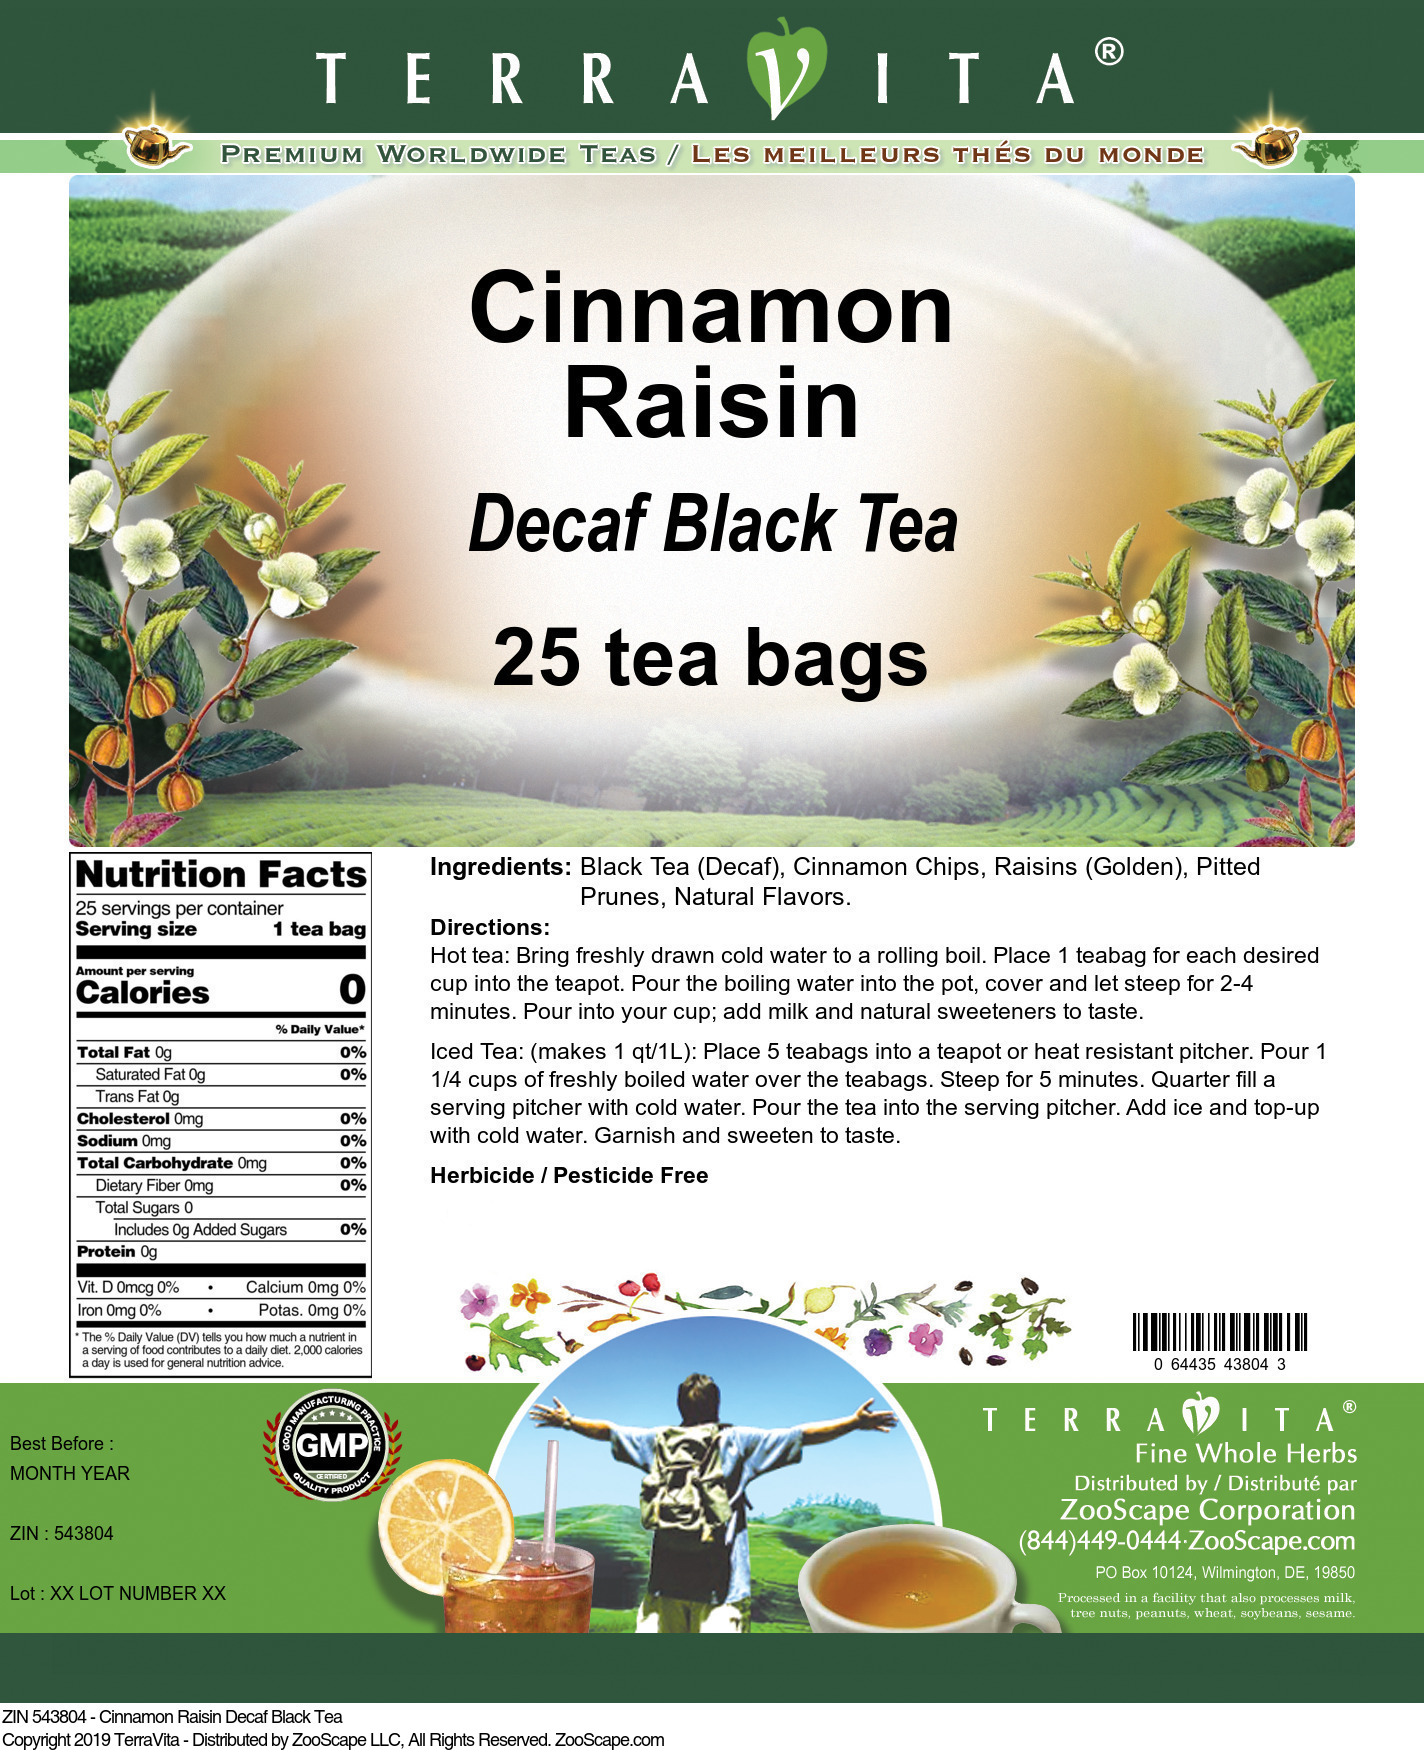 Cinnamon Raisin Decaf Black Tea - Label